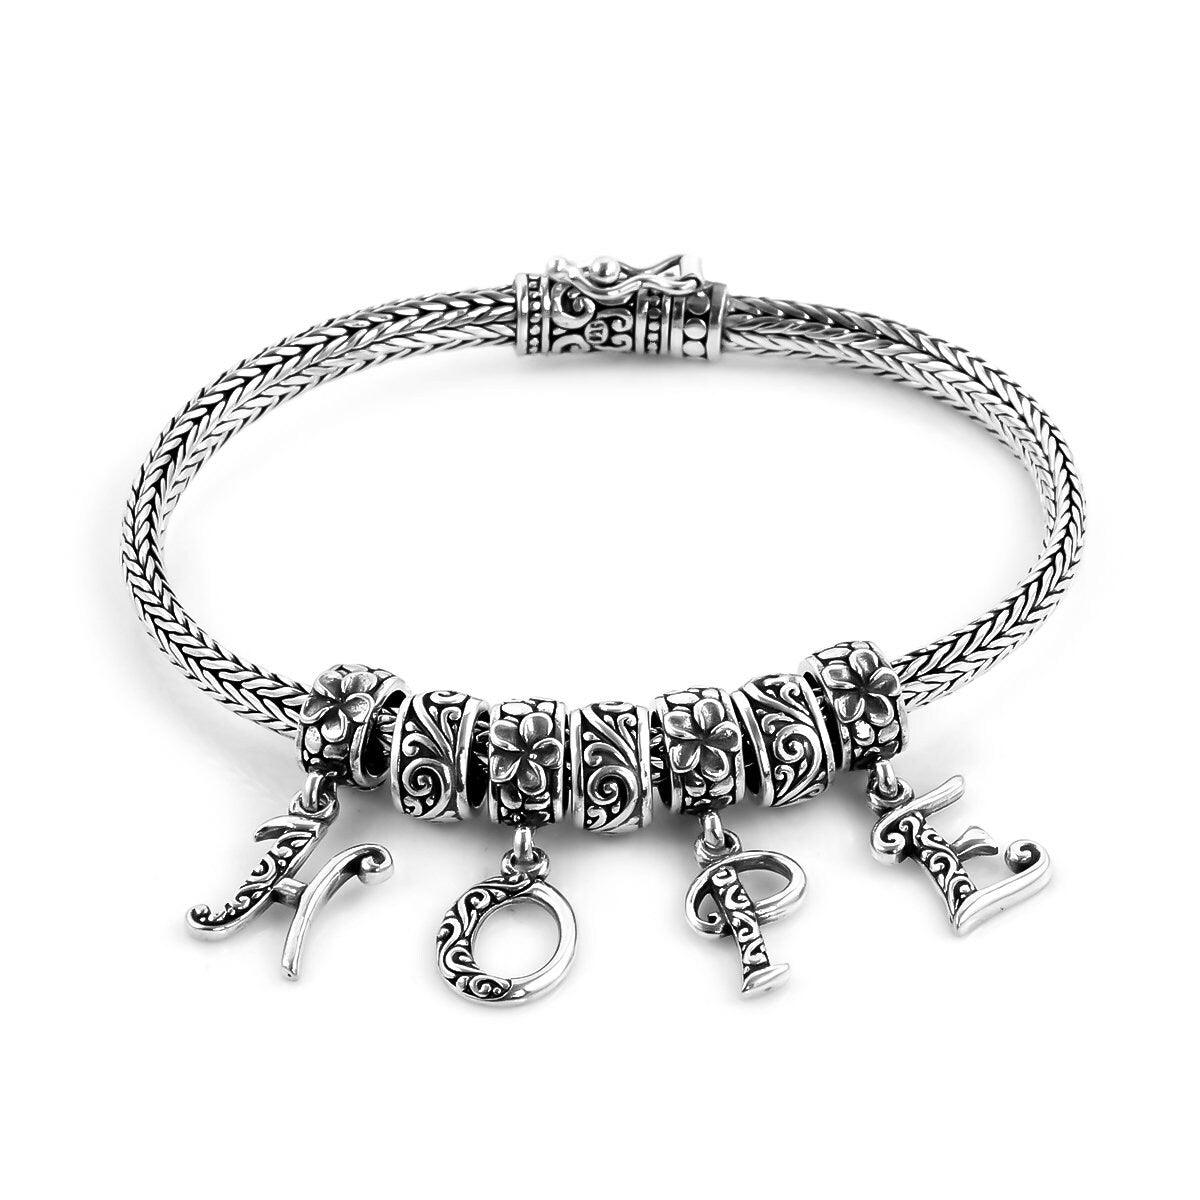 HOPE Charm Snake Chain Bracelet Inspiring Bracelet in Solid 925 Sterling Silver - Inspiring Jewellery - Inspiring Jewellery